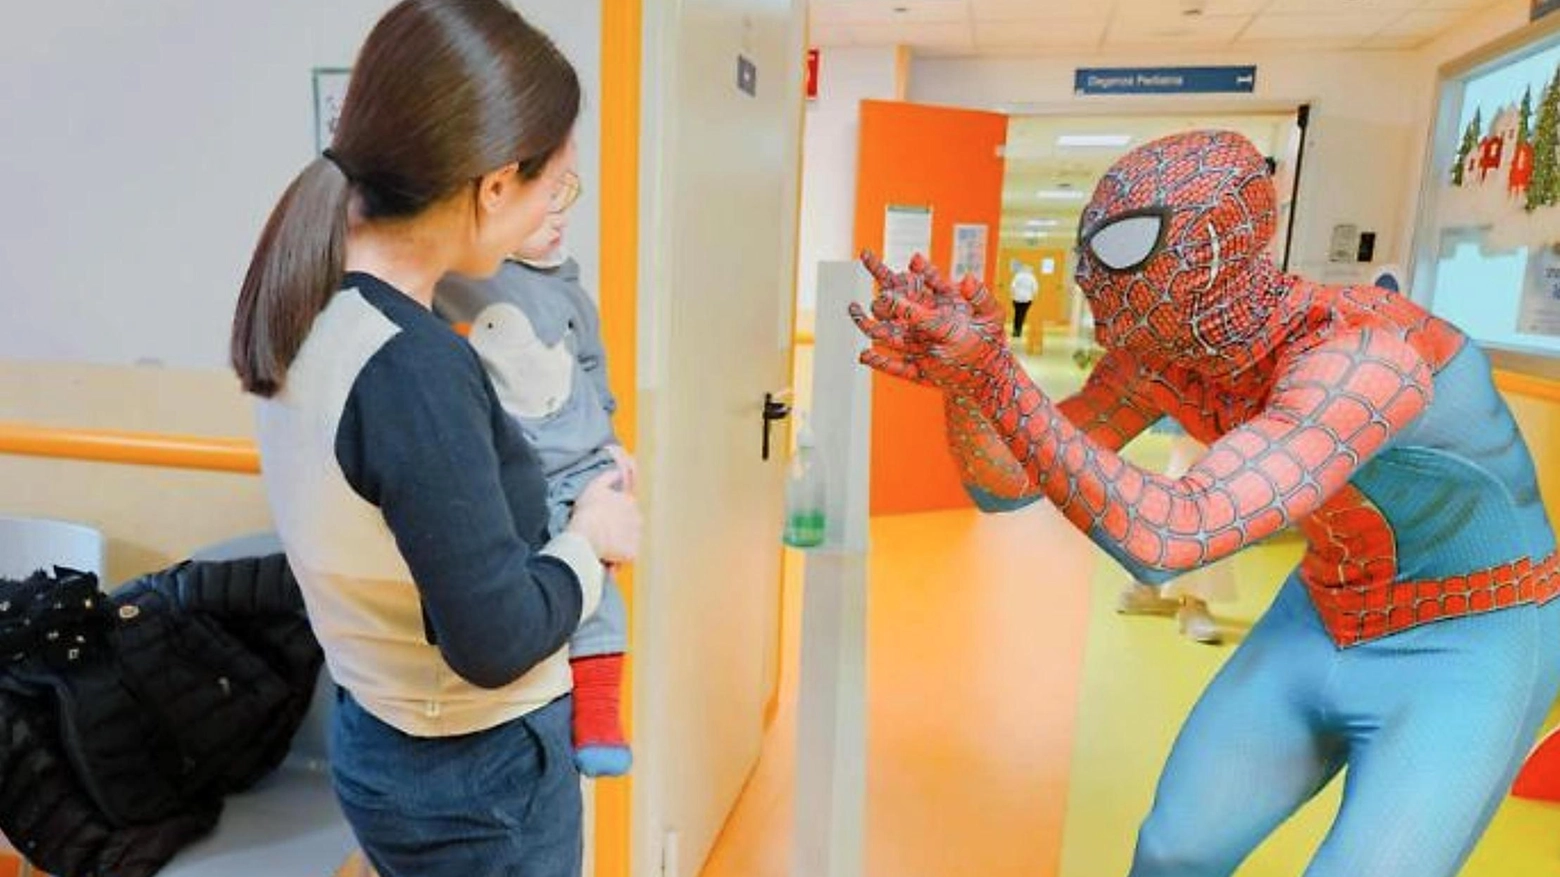 SpiderTia arriva al Policlinico. Un incontro molto speciale per baby pazienti e volontari